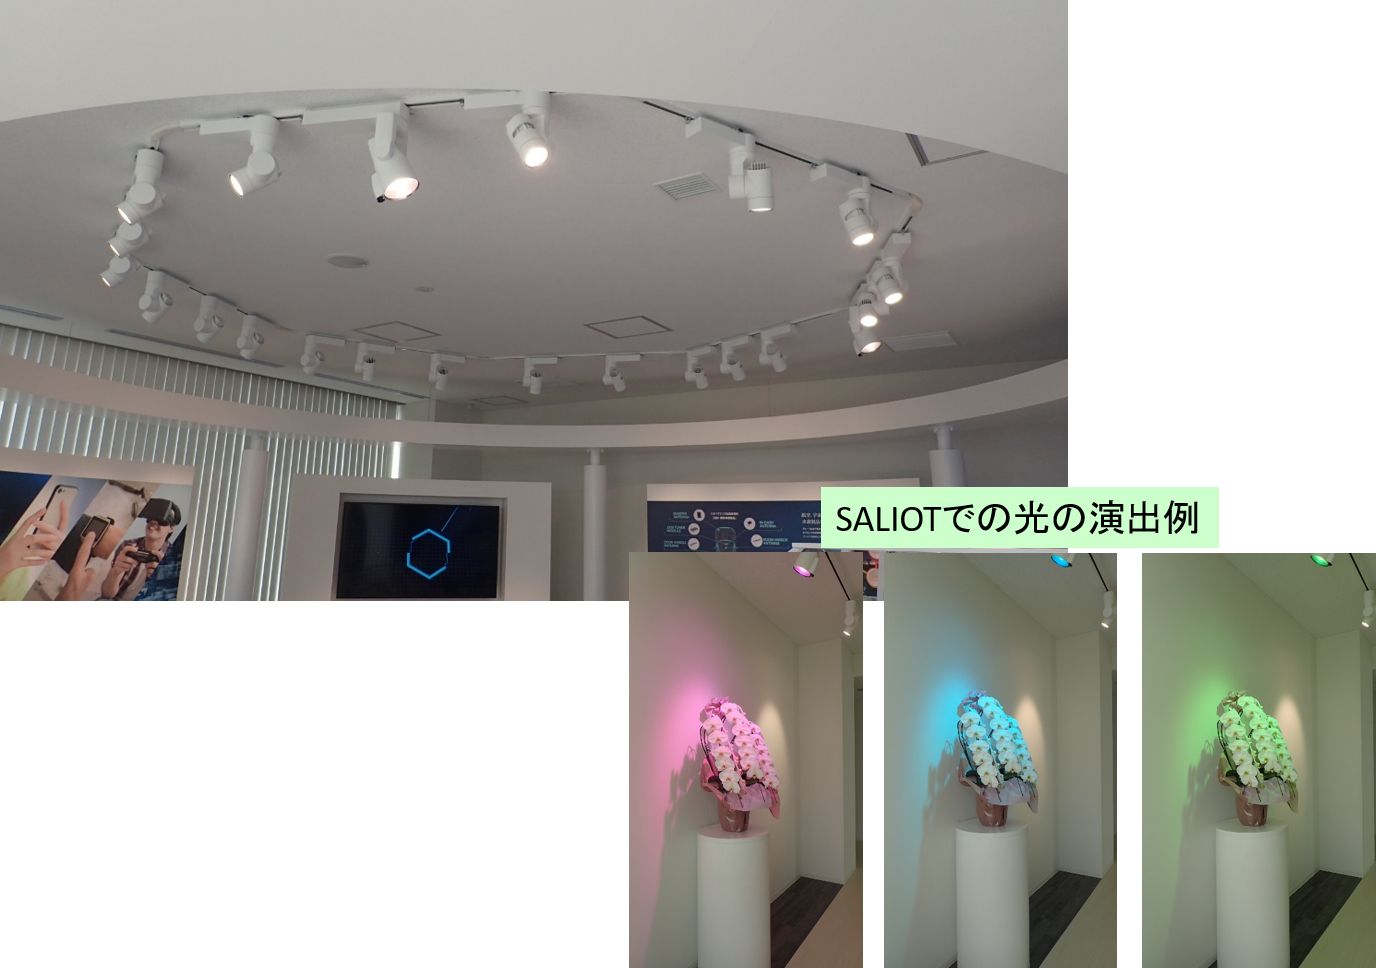 スマートLED照明「SALIOT(Smart Adjustable Light for the Internet Of Things)」